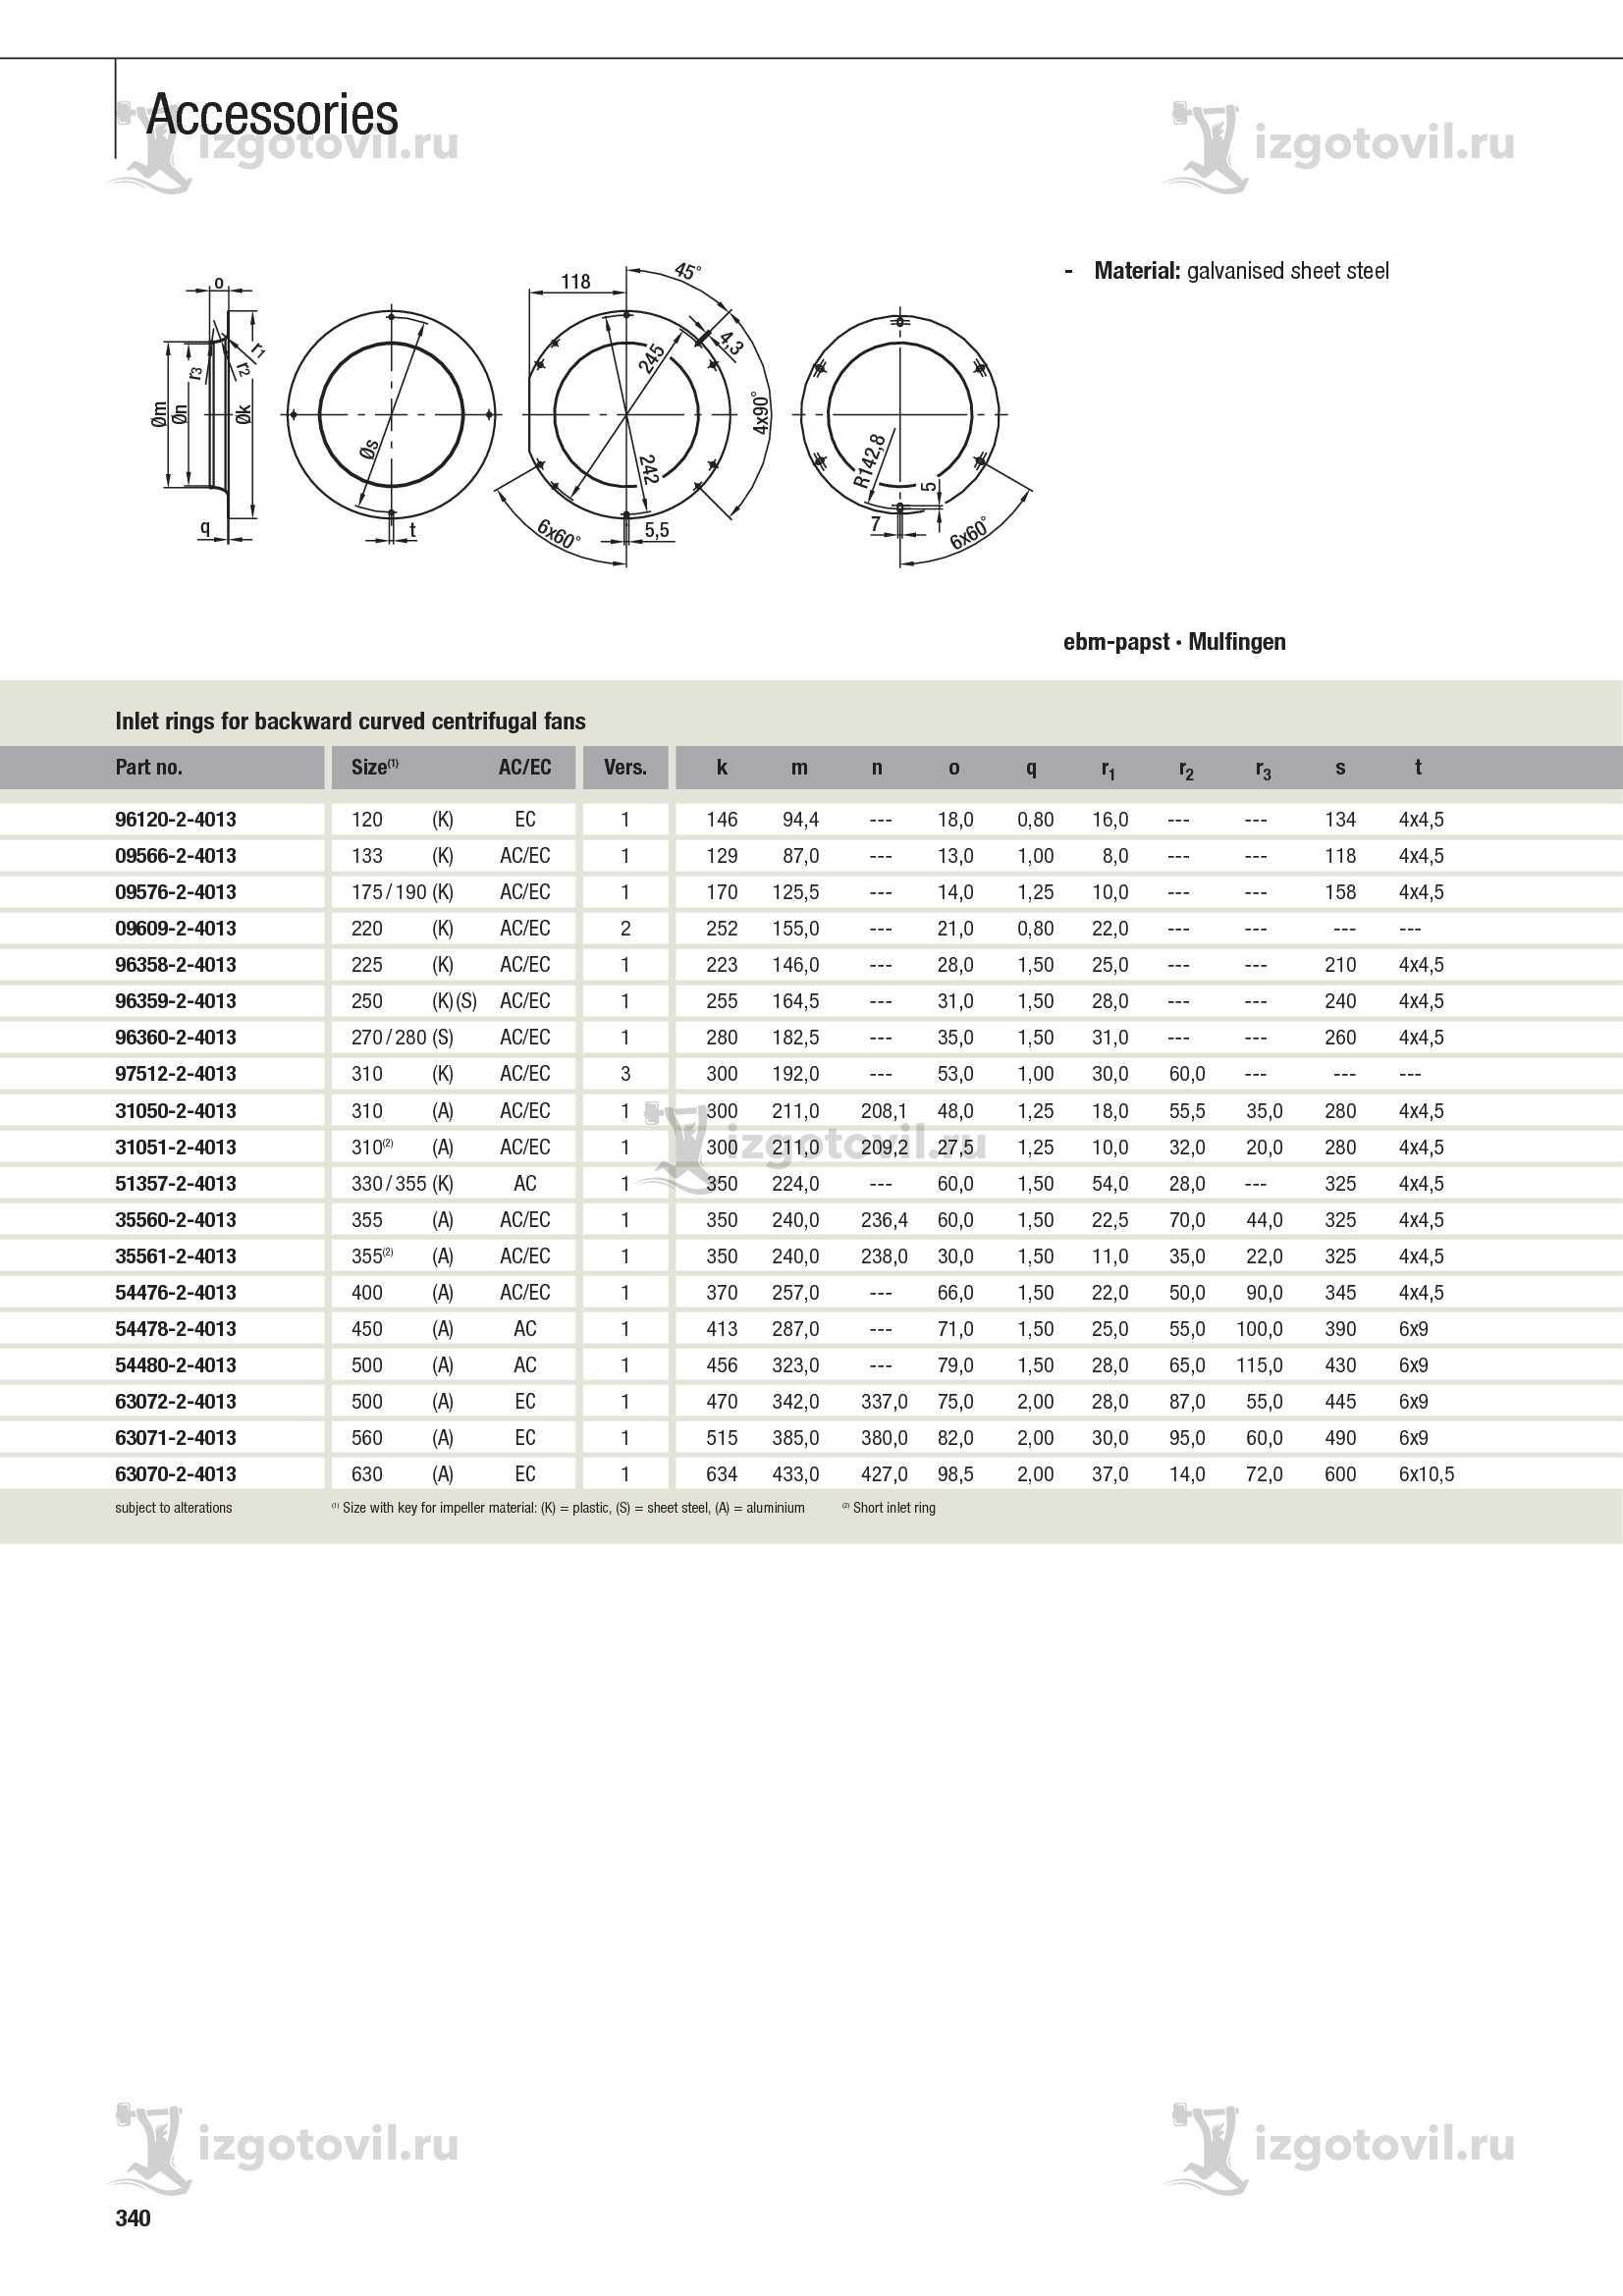 Изготовление деталей на заказ (2E200-CF02-27 клеммные коробки / конденсаторы ).